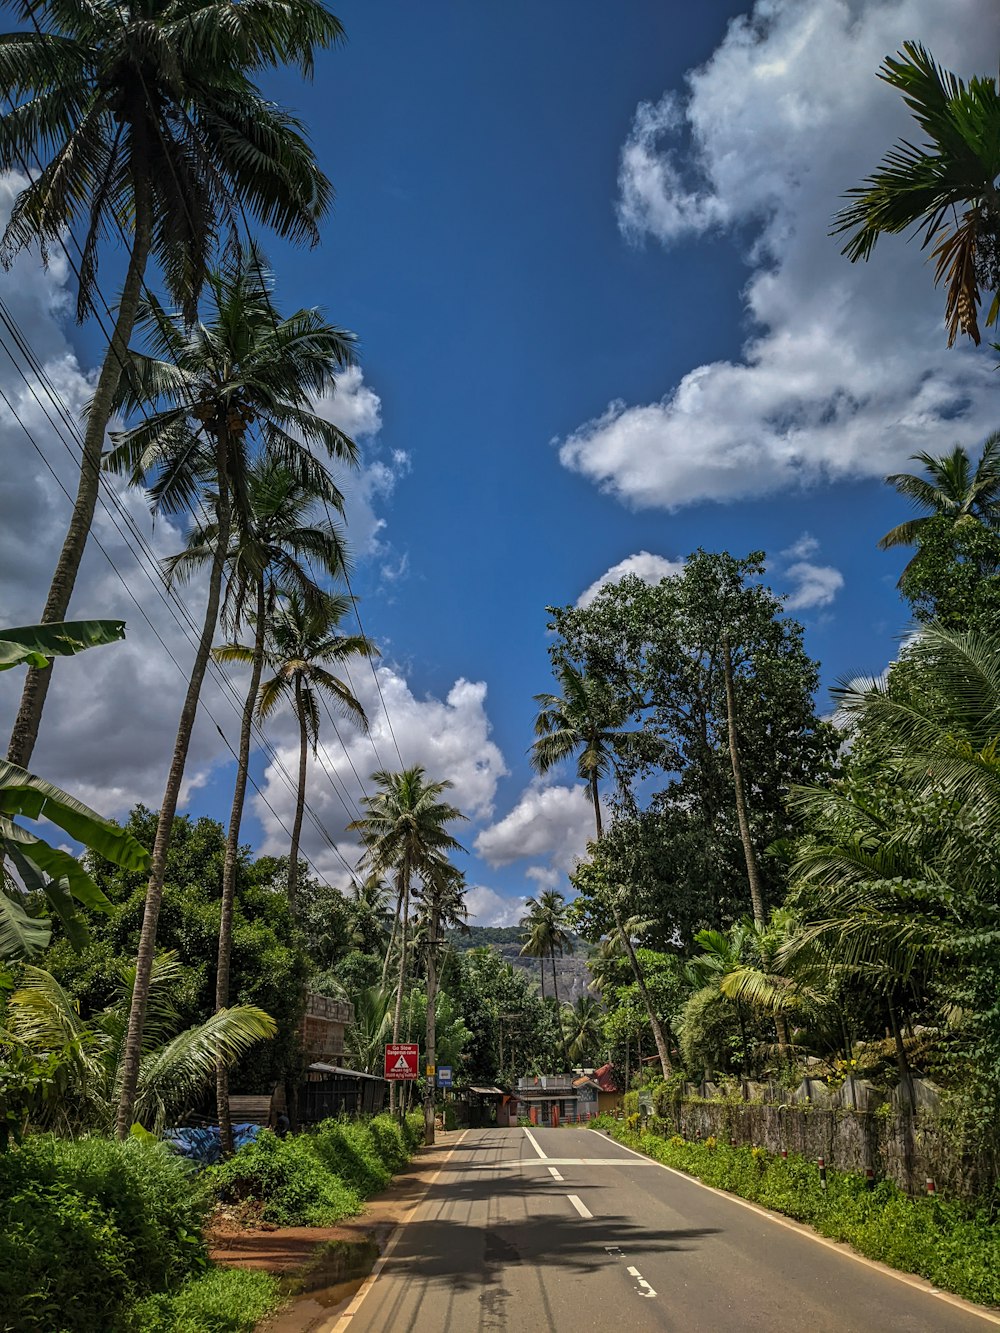 une rue bordée de palmiers sous un ciel bleu nuageux